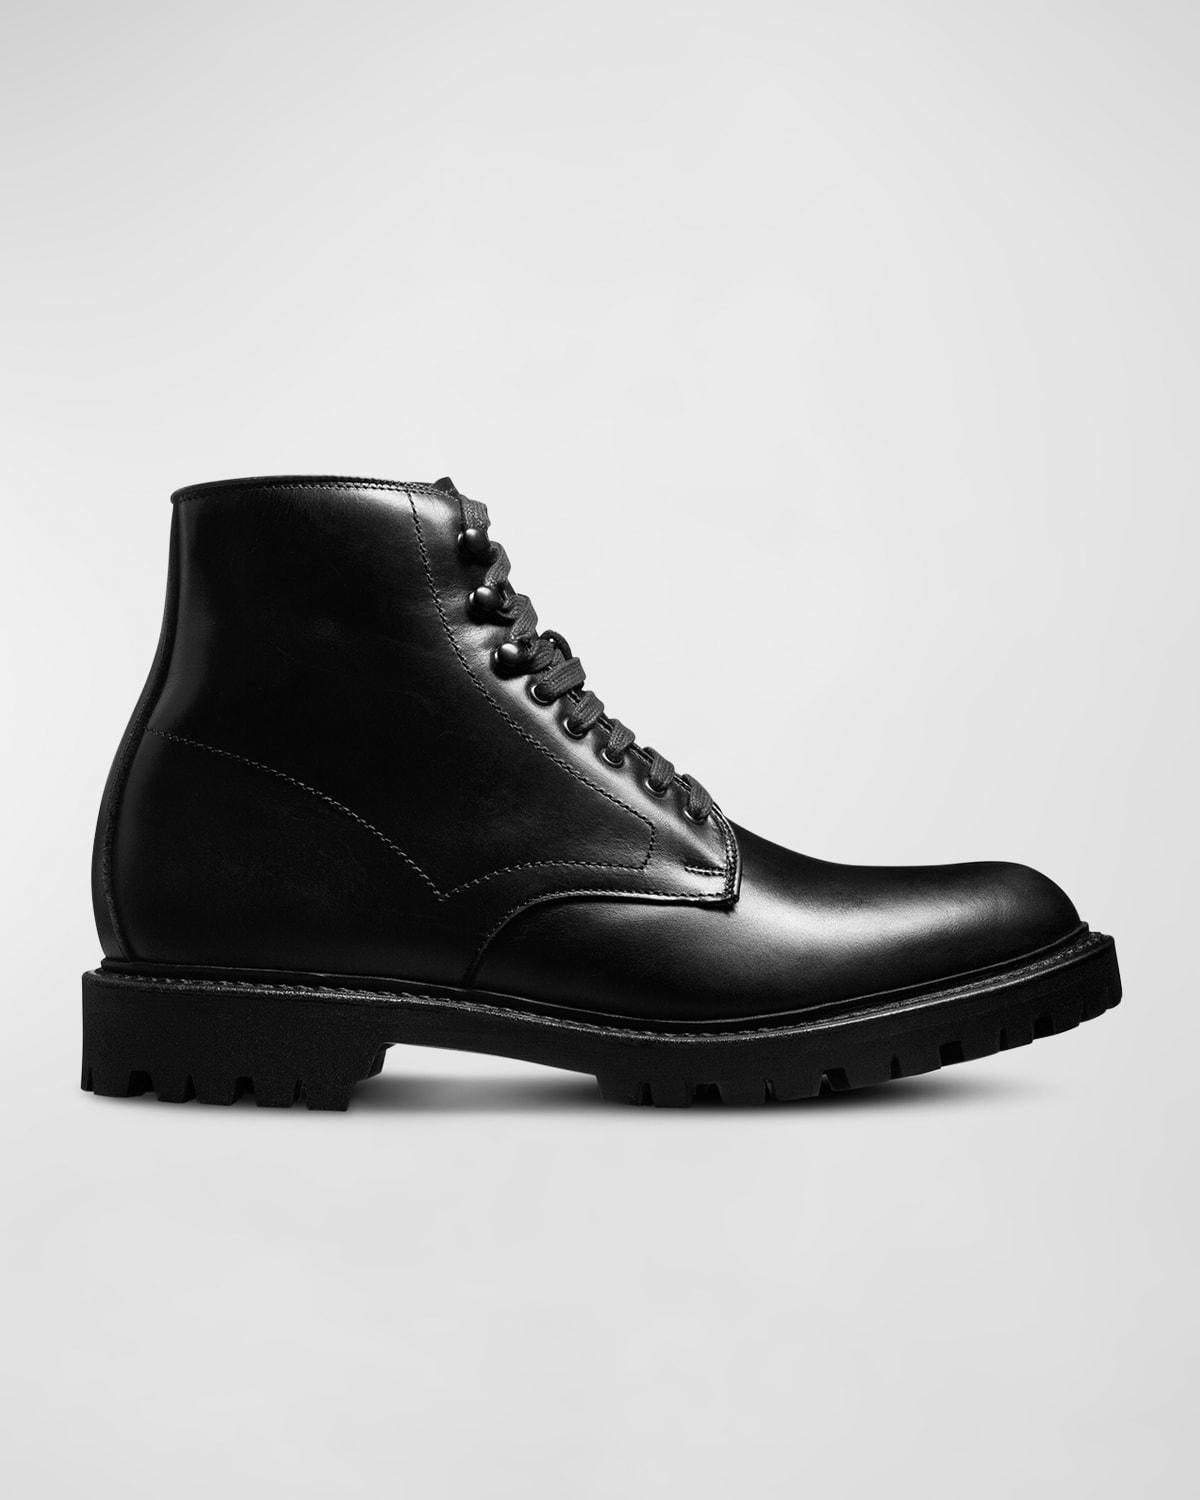 Allen Edmonds Higgins Waterproof Plain Toe Boot Product Image